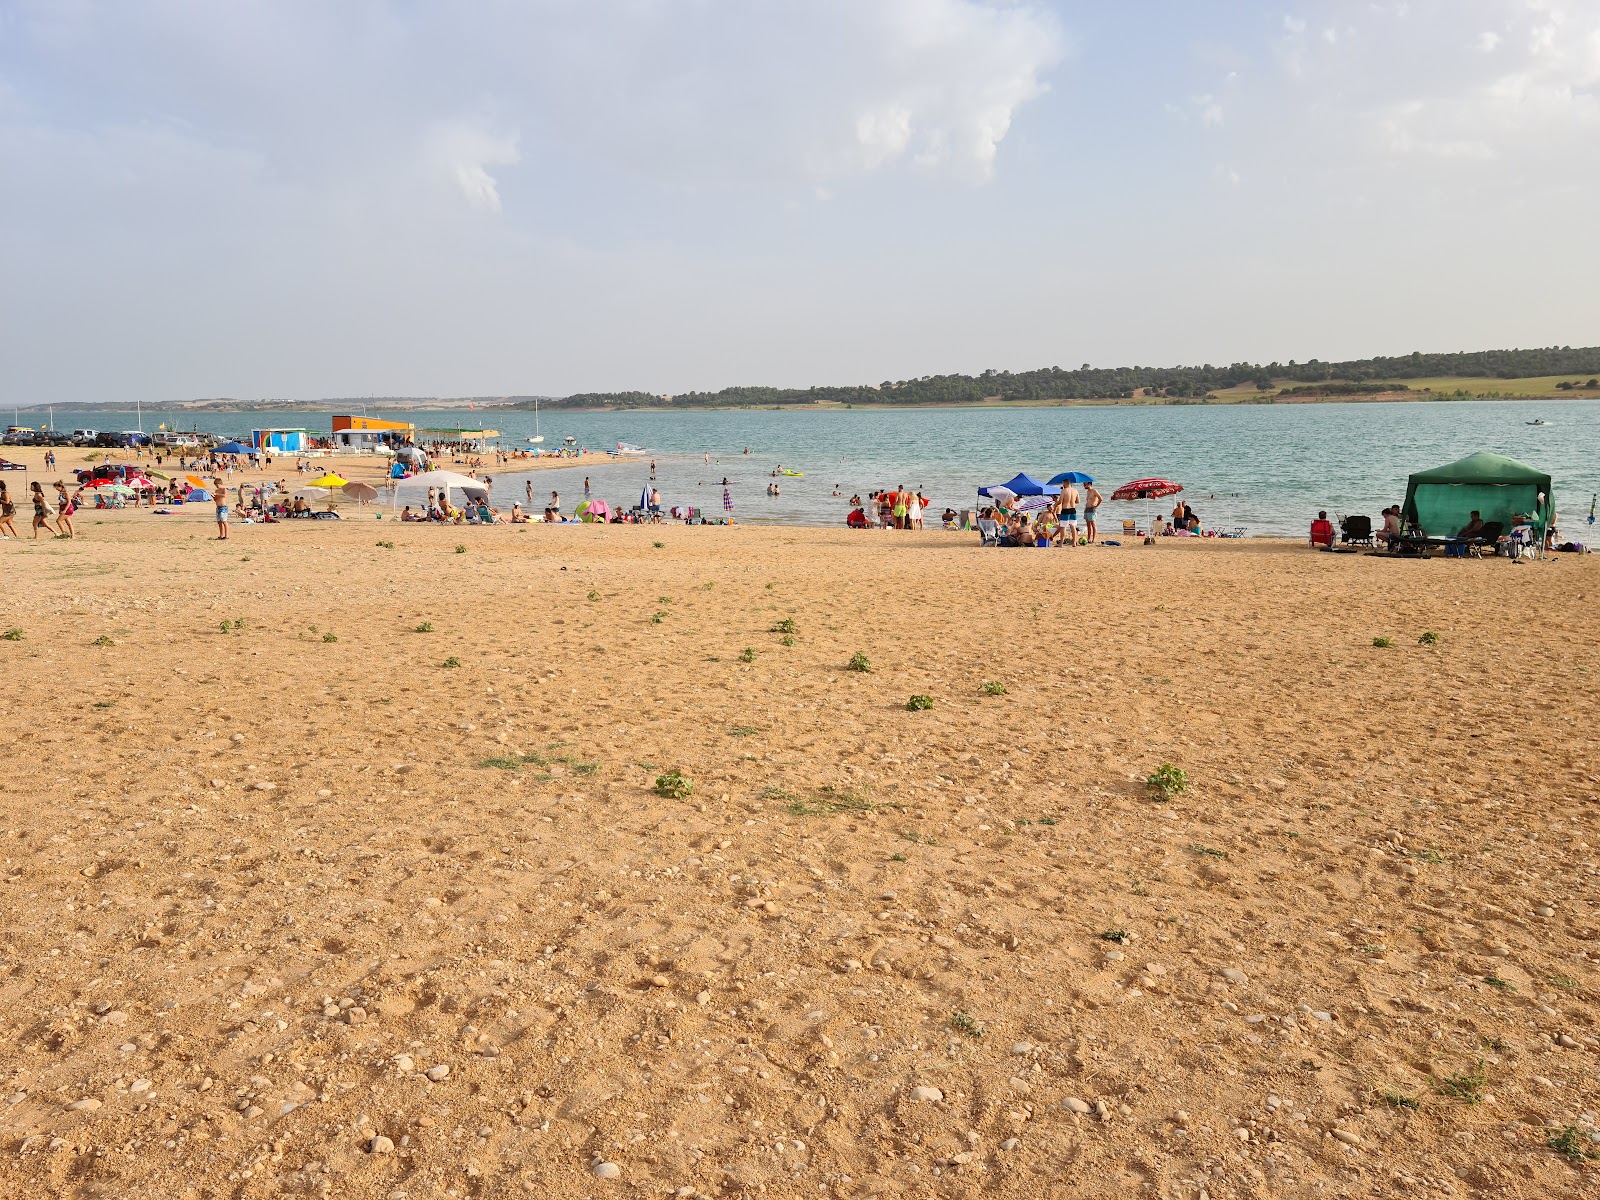 Playa Manchamar'in fotoğrafı geniş plaj ile birlikte